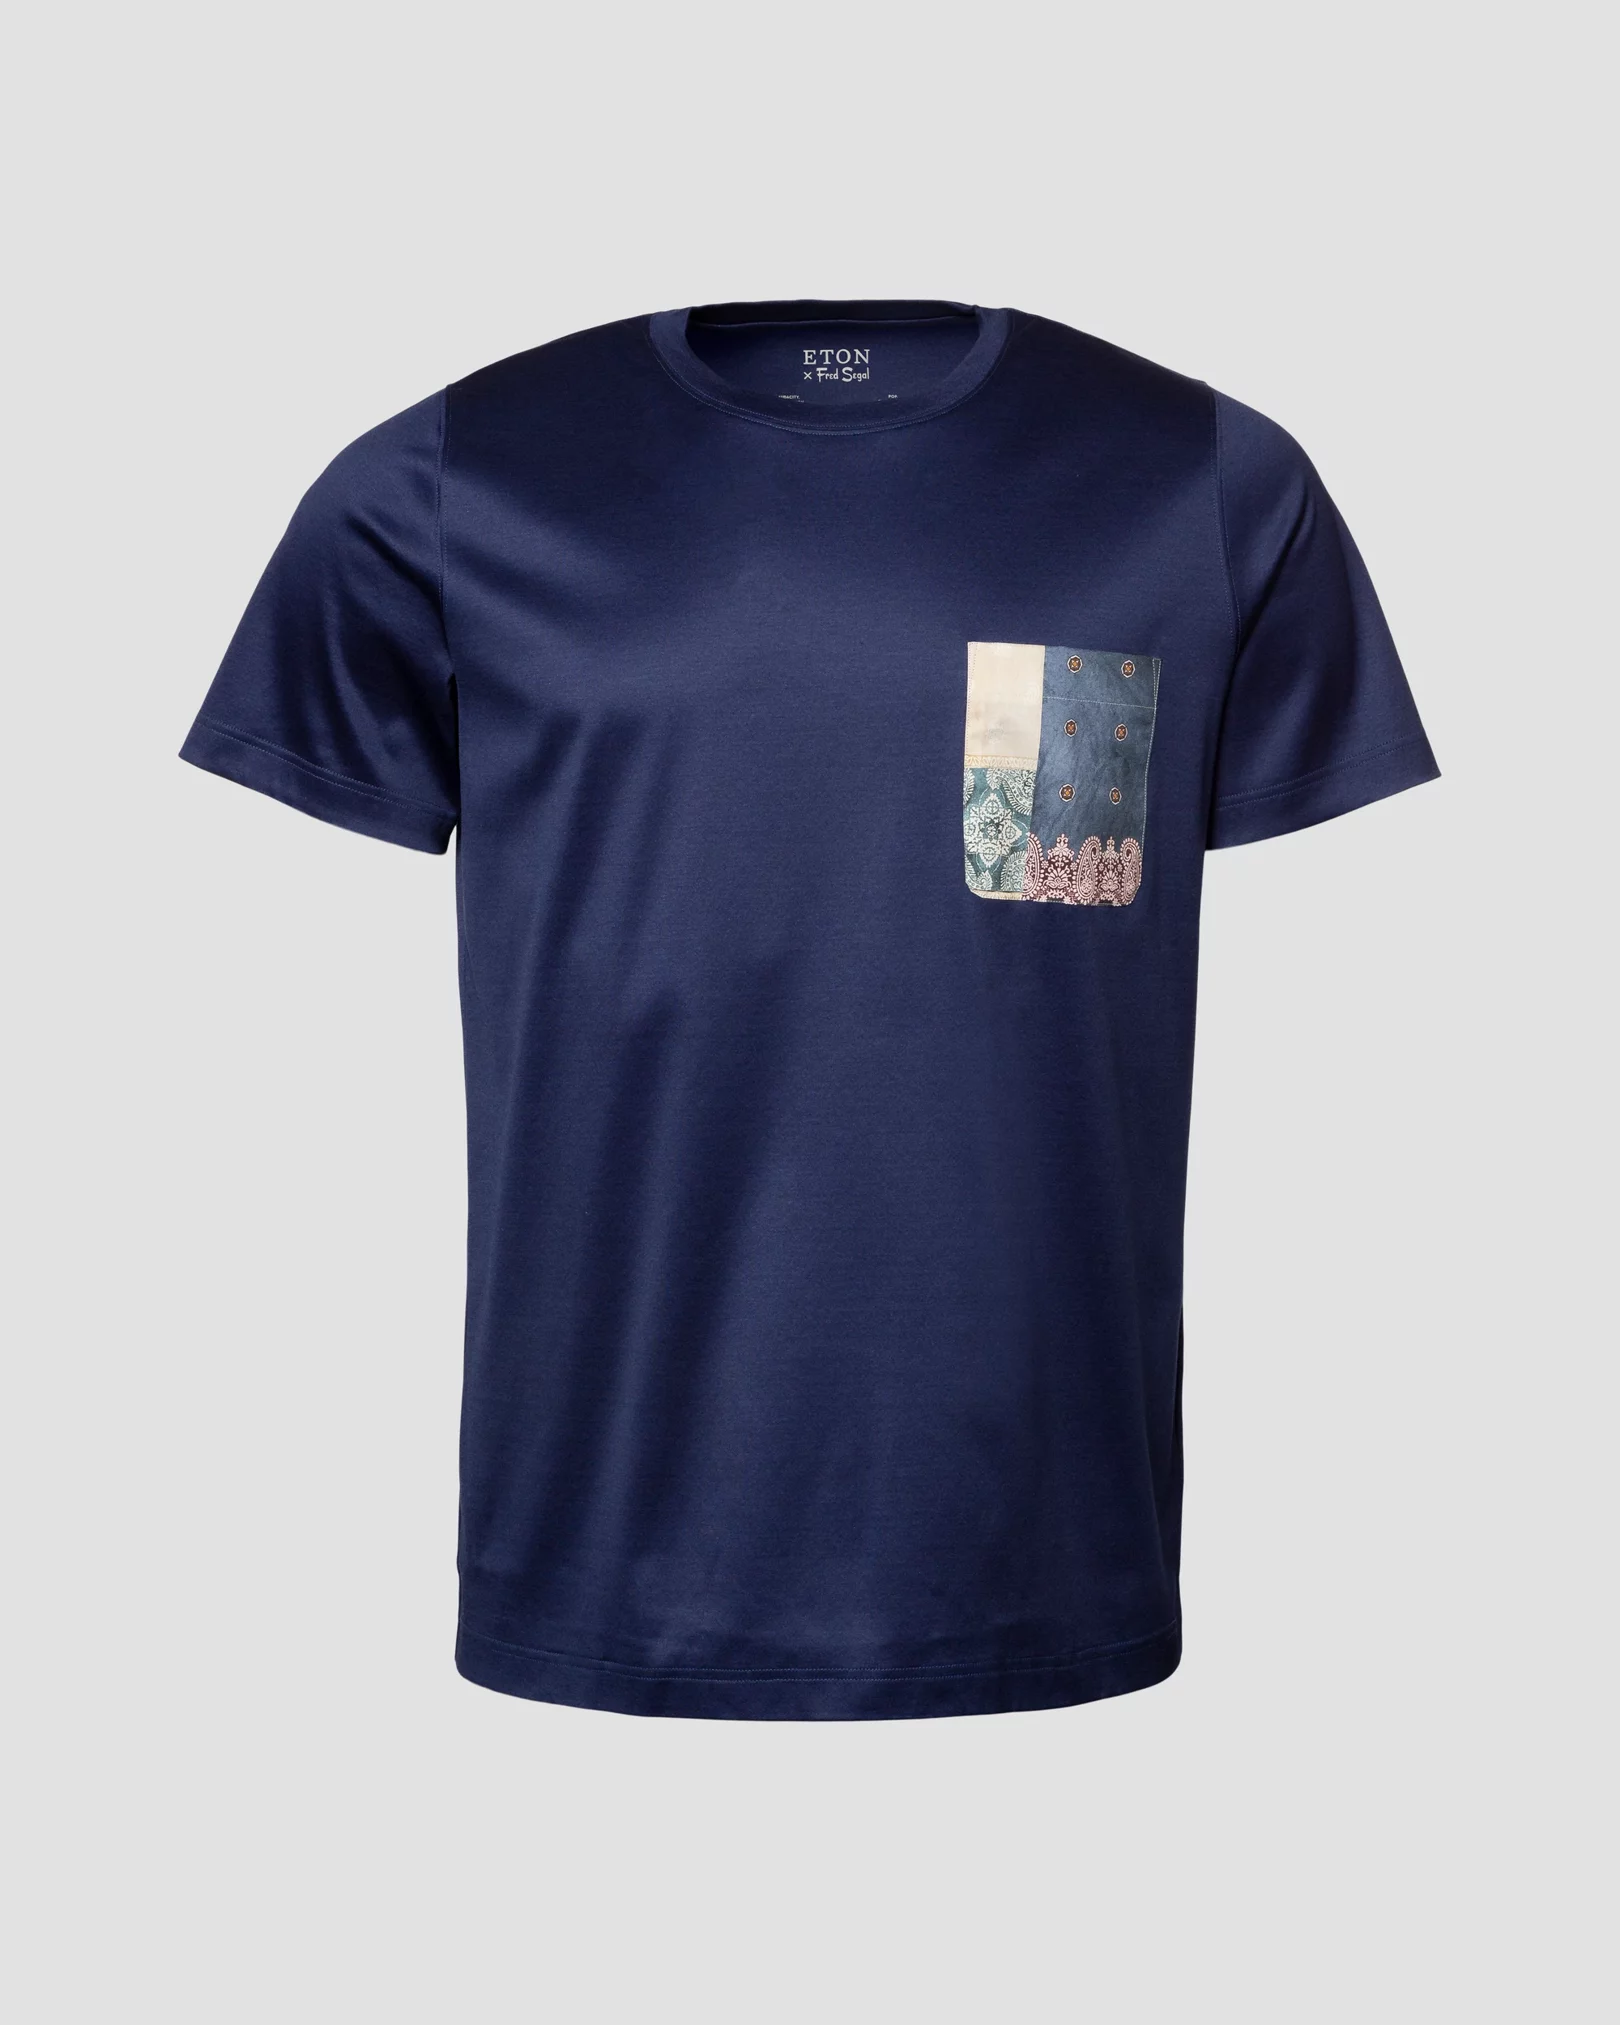 T-shirt bleu marine en fil d’Écosse, édition spéciale